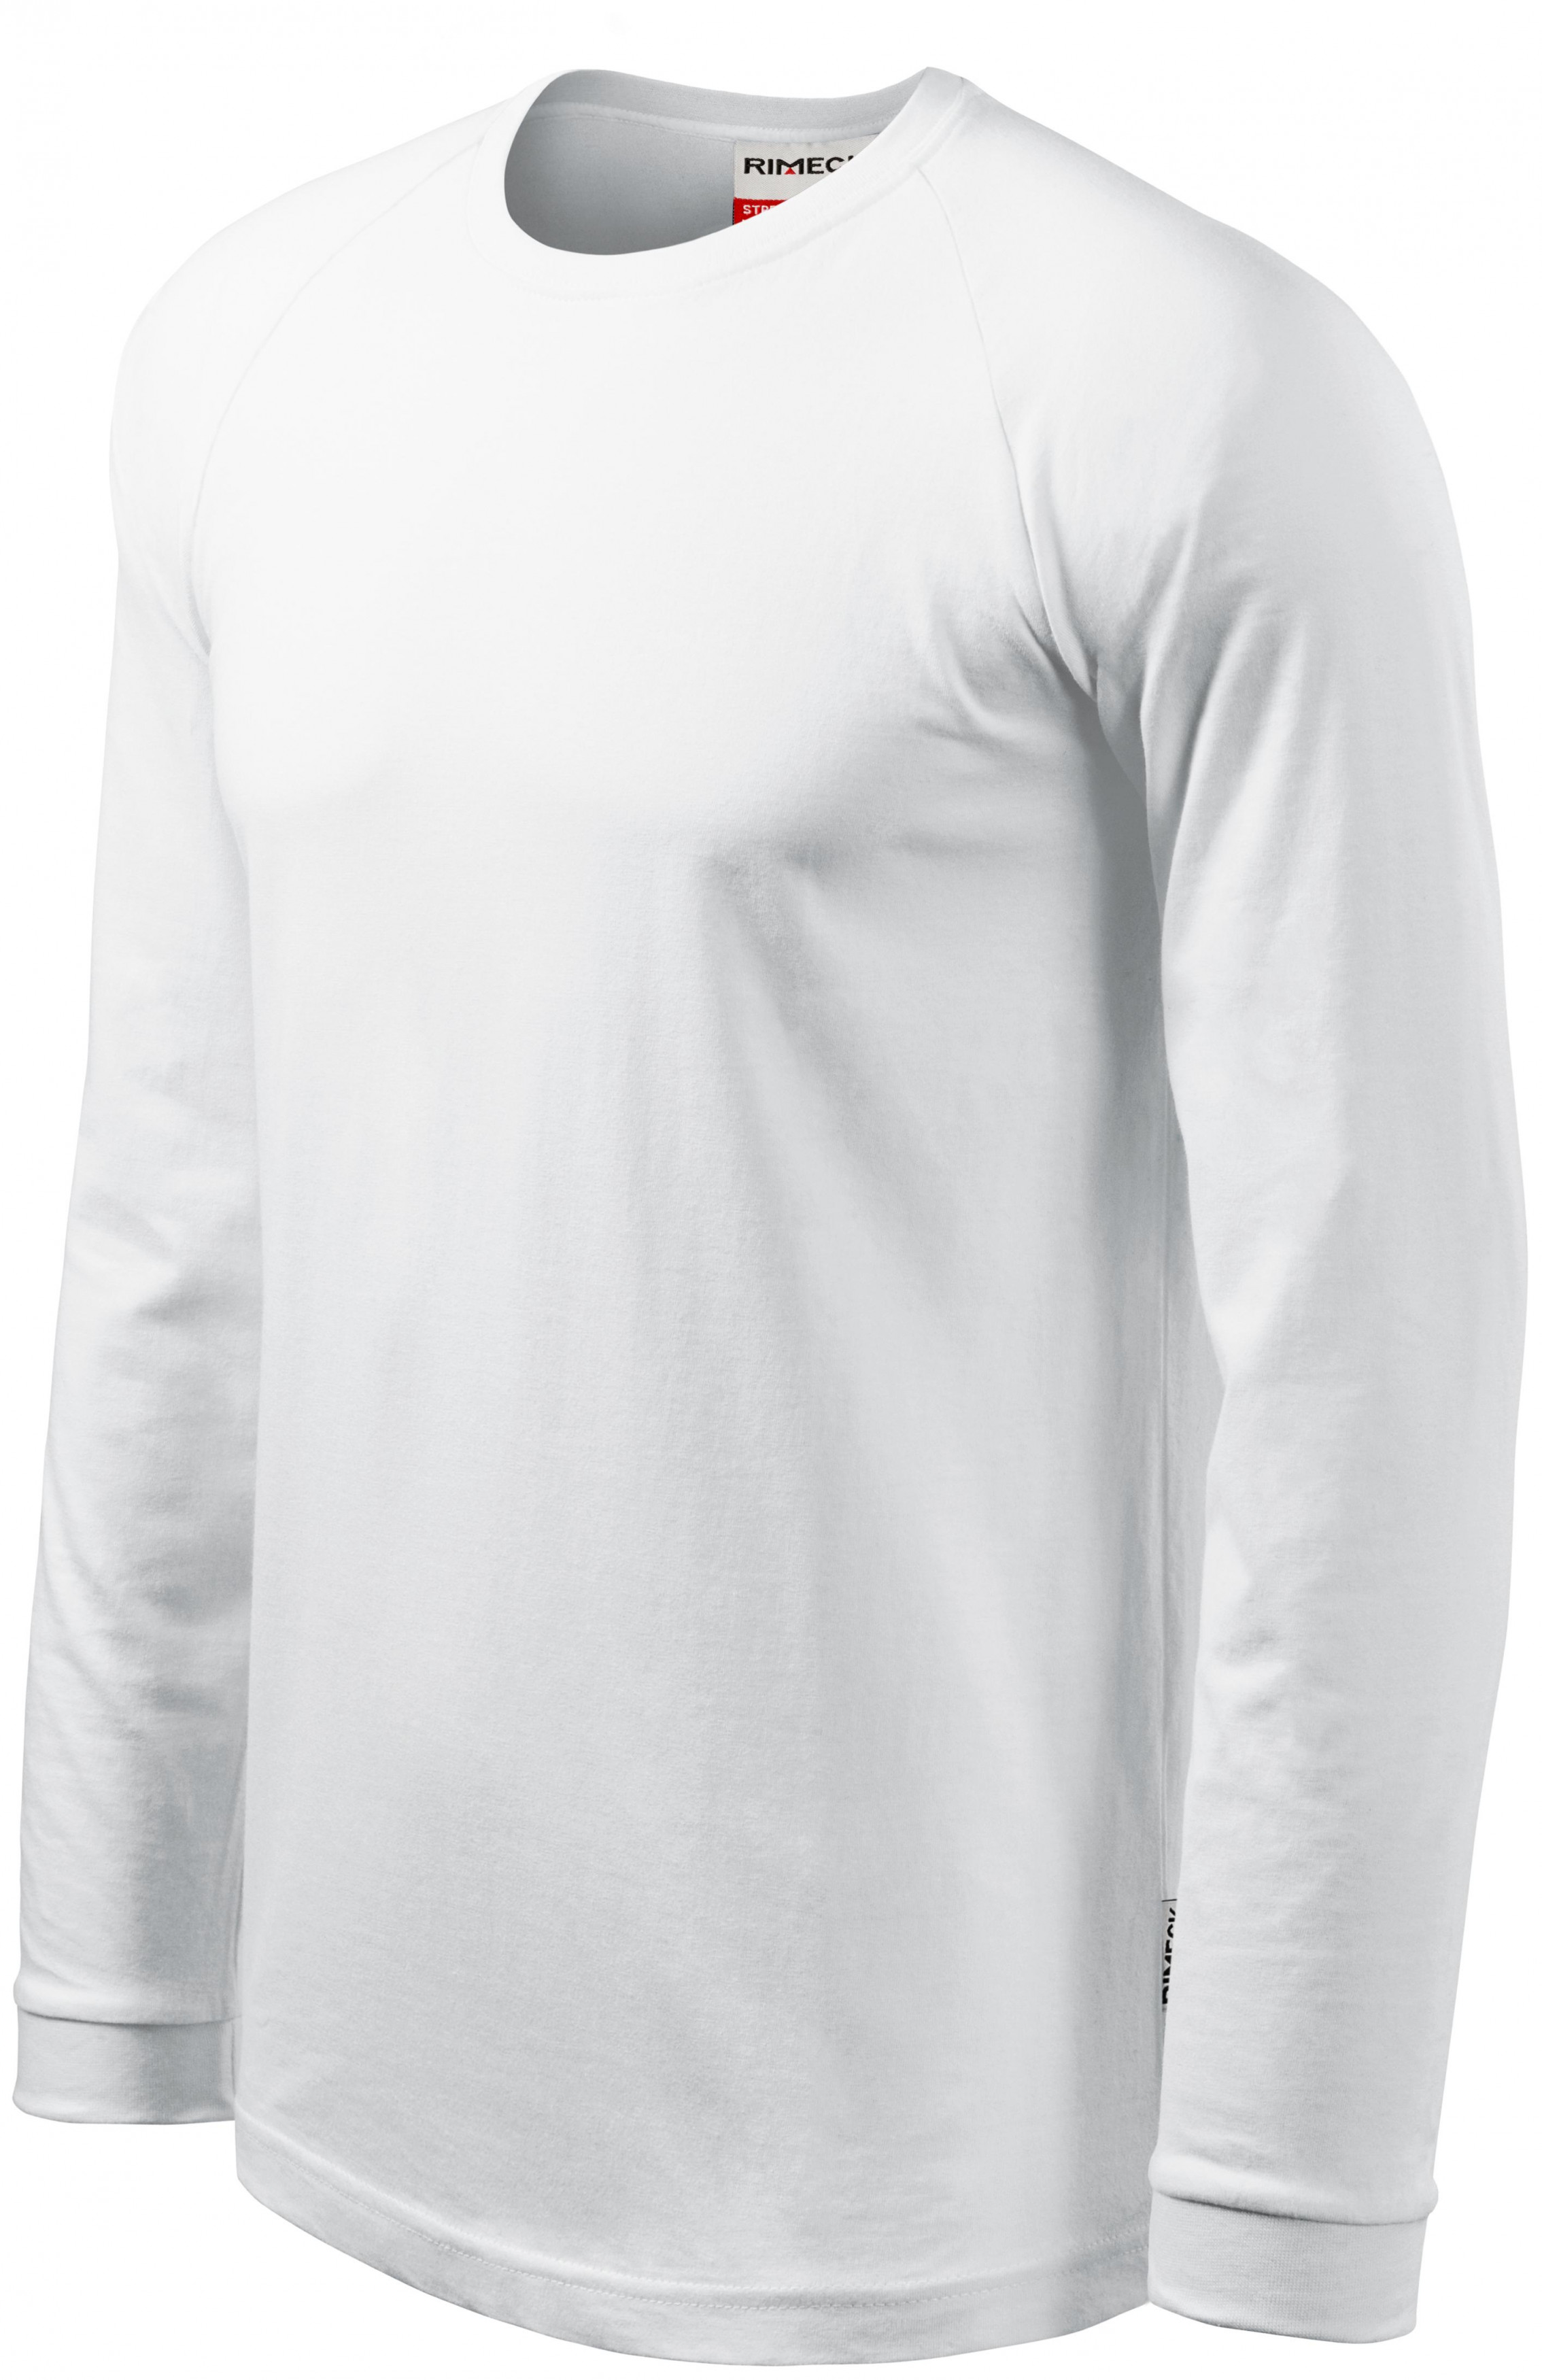 Pánske tričko s dlhým rukávom, kontrastné, biela, L